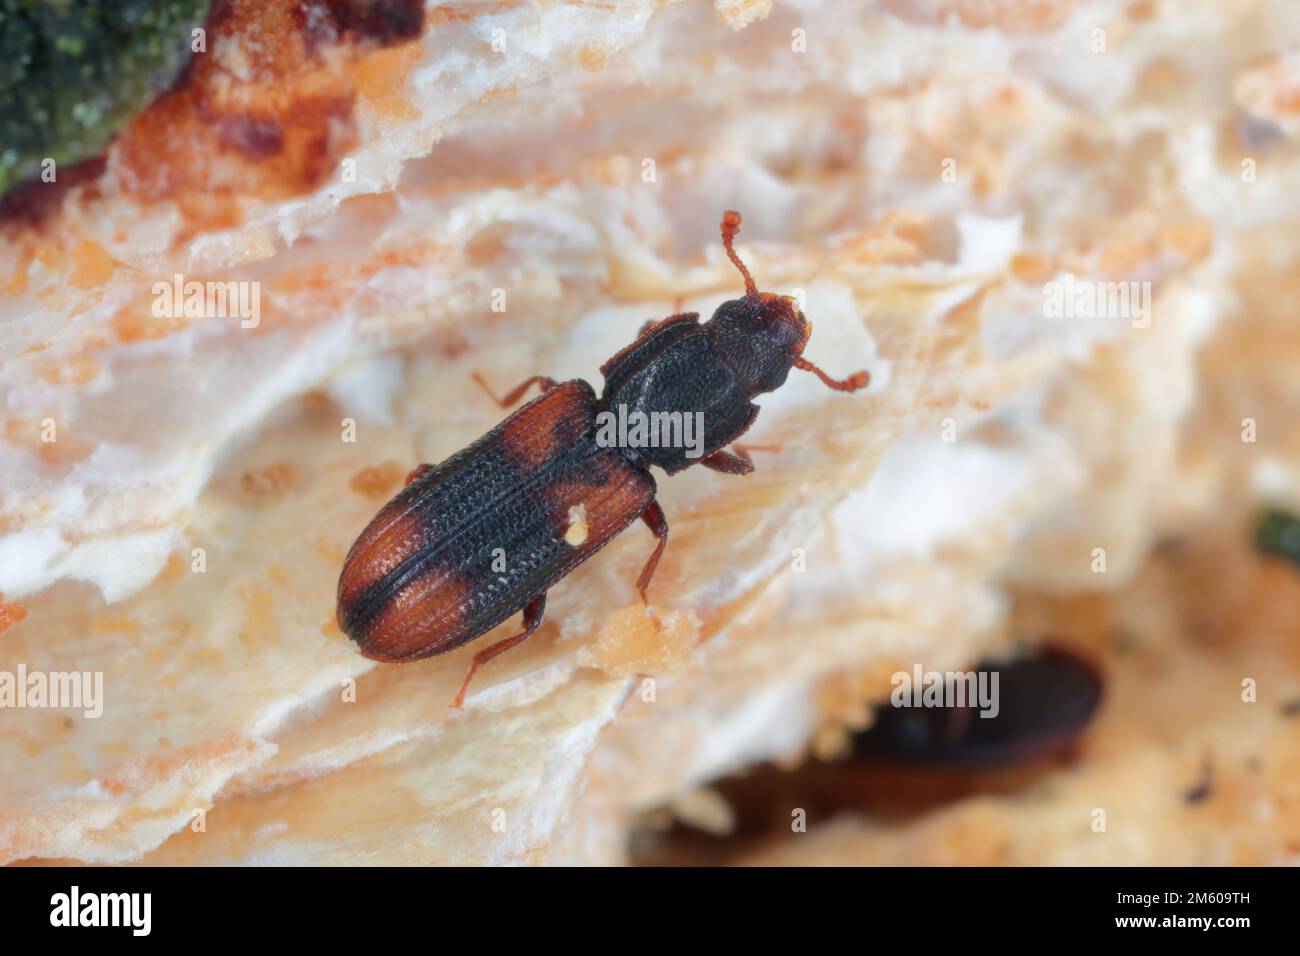 Saddle backed Bitoma, Wedge shaped Beetle (Bitoma crenata, Ditoma crenata), on deadwood. Stock Photo